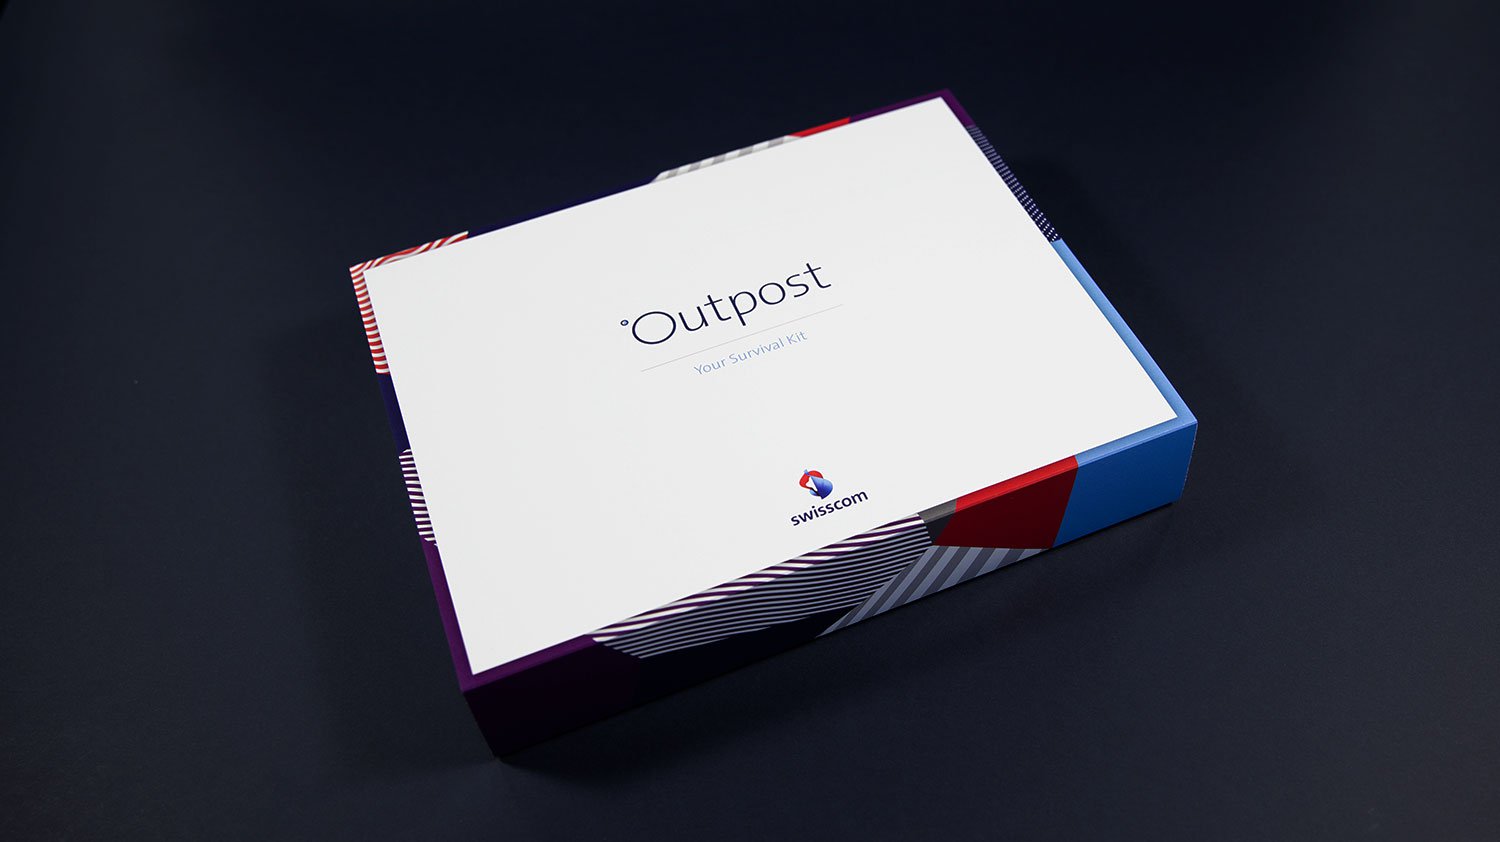 Swisscom Outpost kit